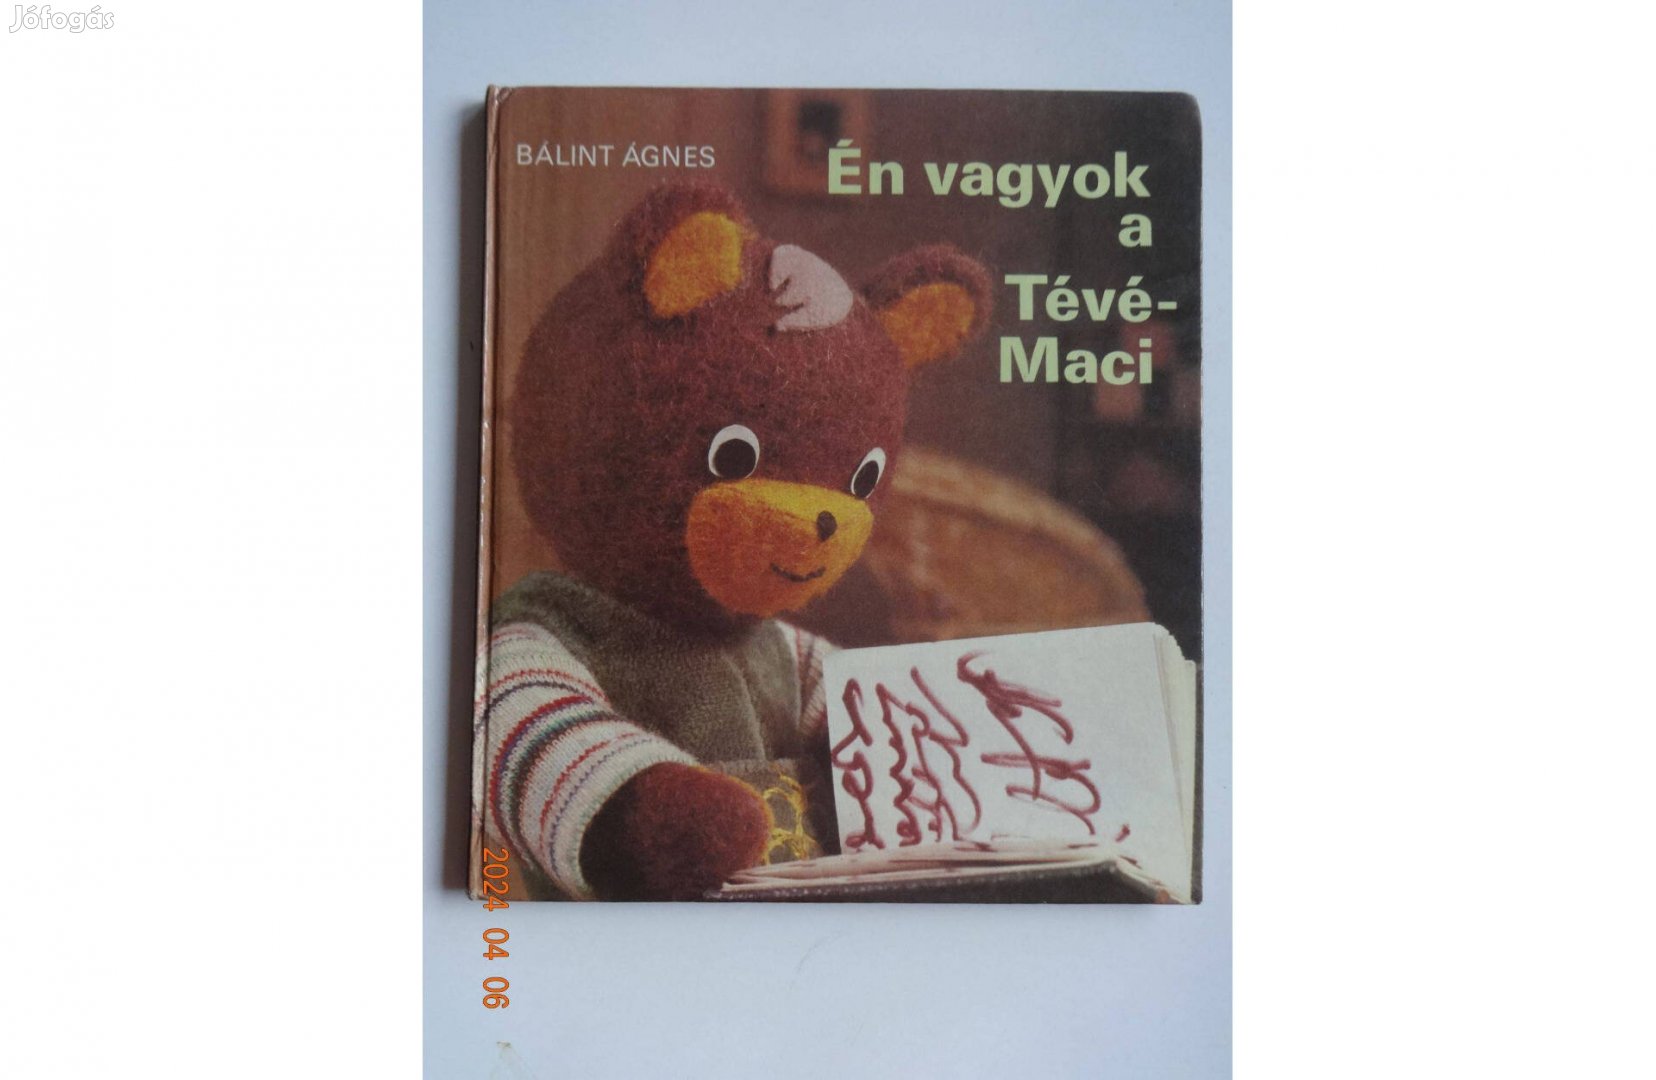 Bálint Ágnes: Én vagyok a Tévé-Maci - régi mesekönyv (1983) - foglalt